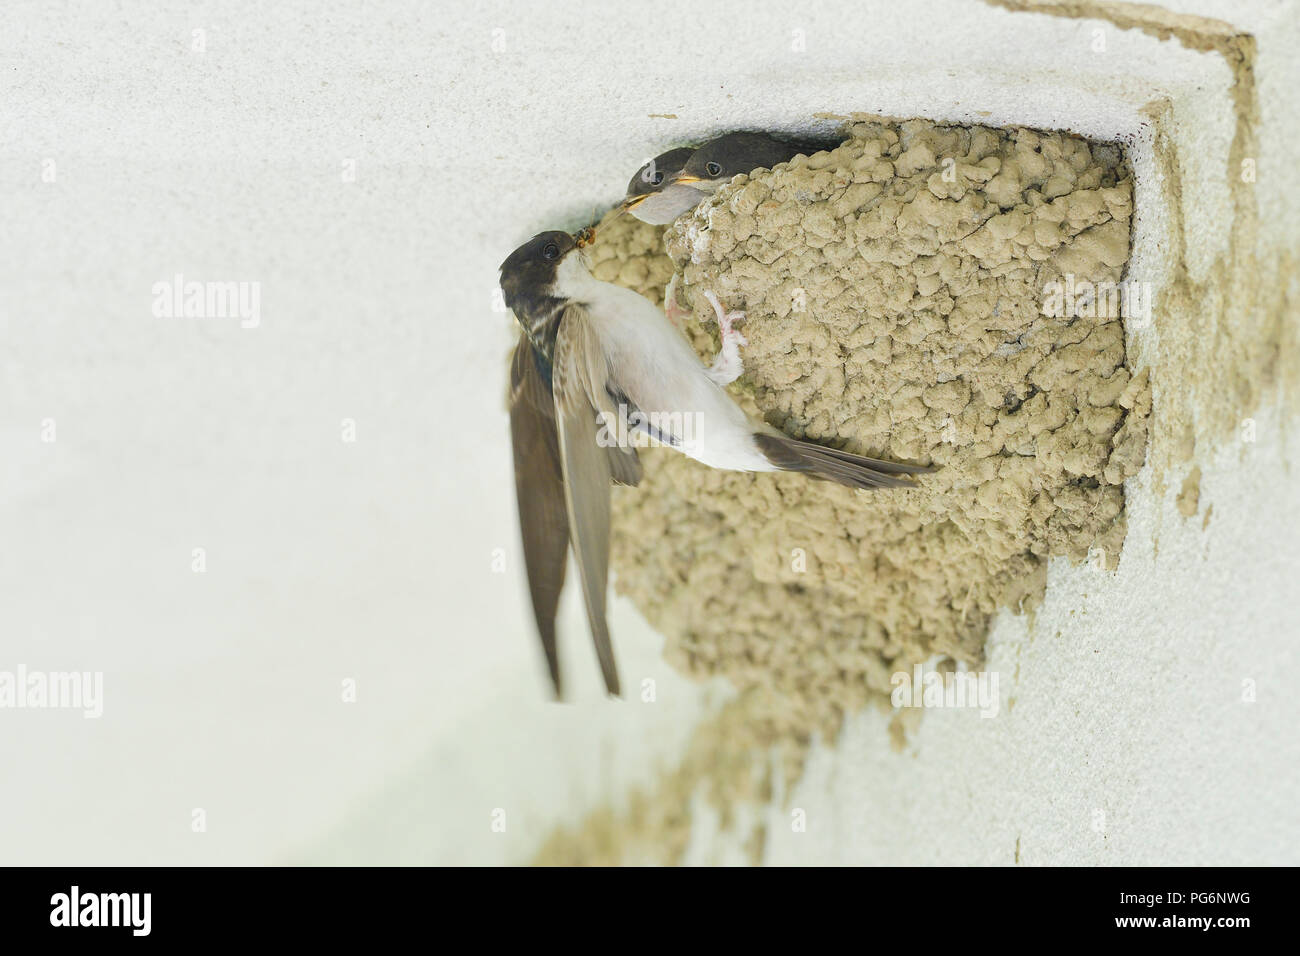 Casa común Martins (Delichon urbica), animal adulto alimenta a los polluelos en el nido en el edificio, Tirol, Austria Foto de stock